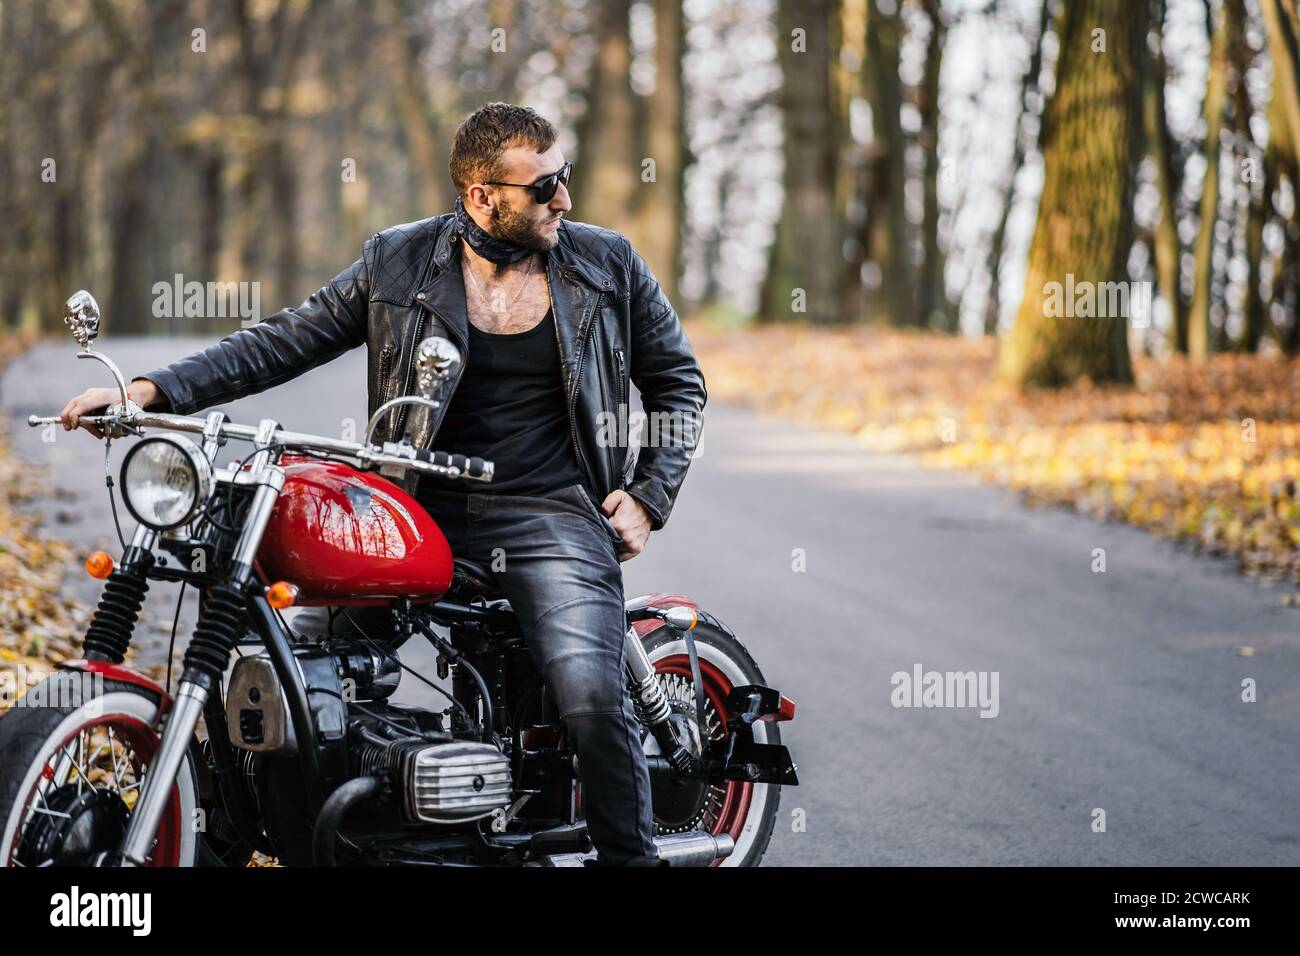 13 ideas de Fotos traje + moto  traje moto, motos, hombre en moto